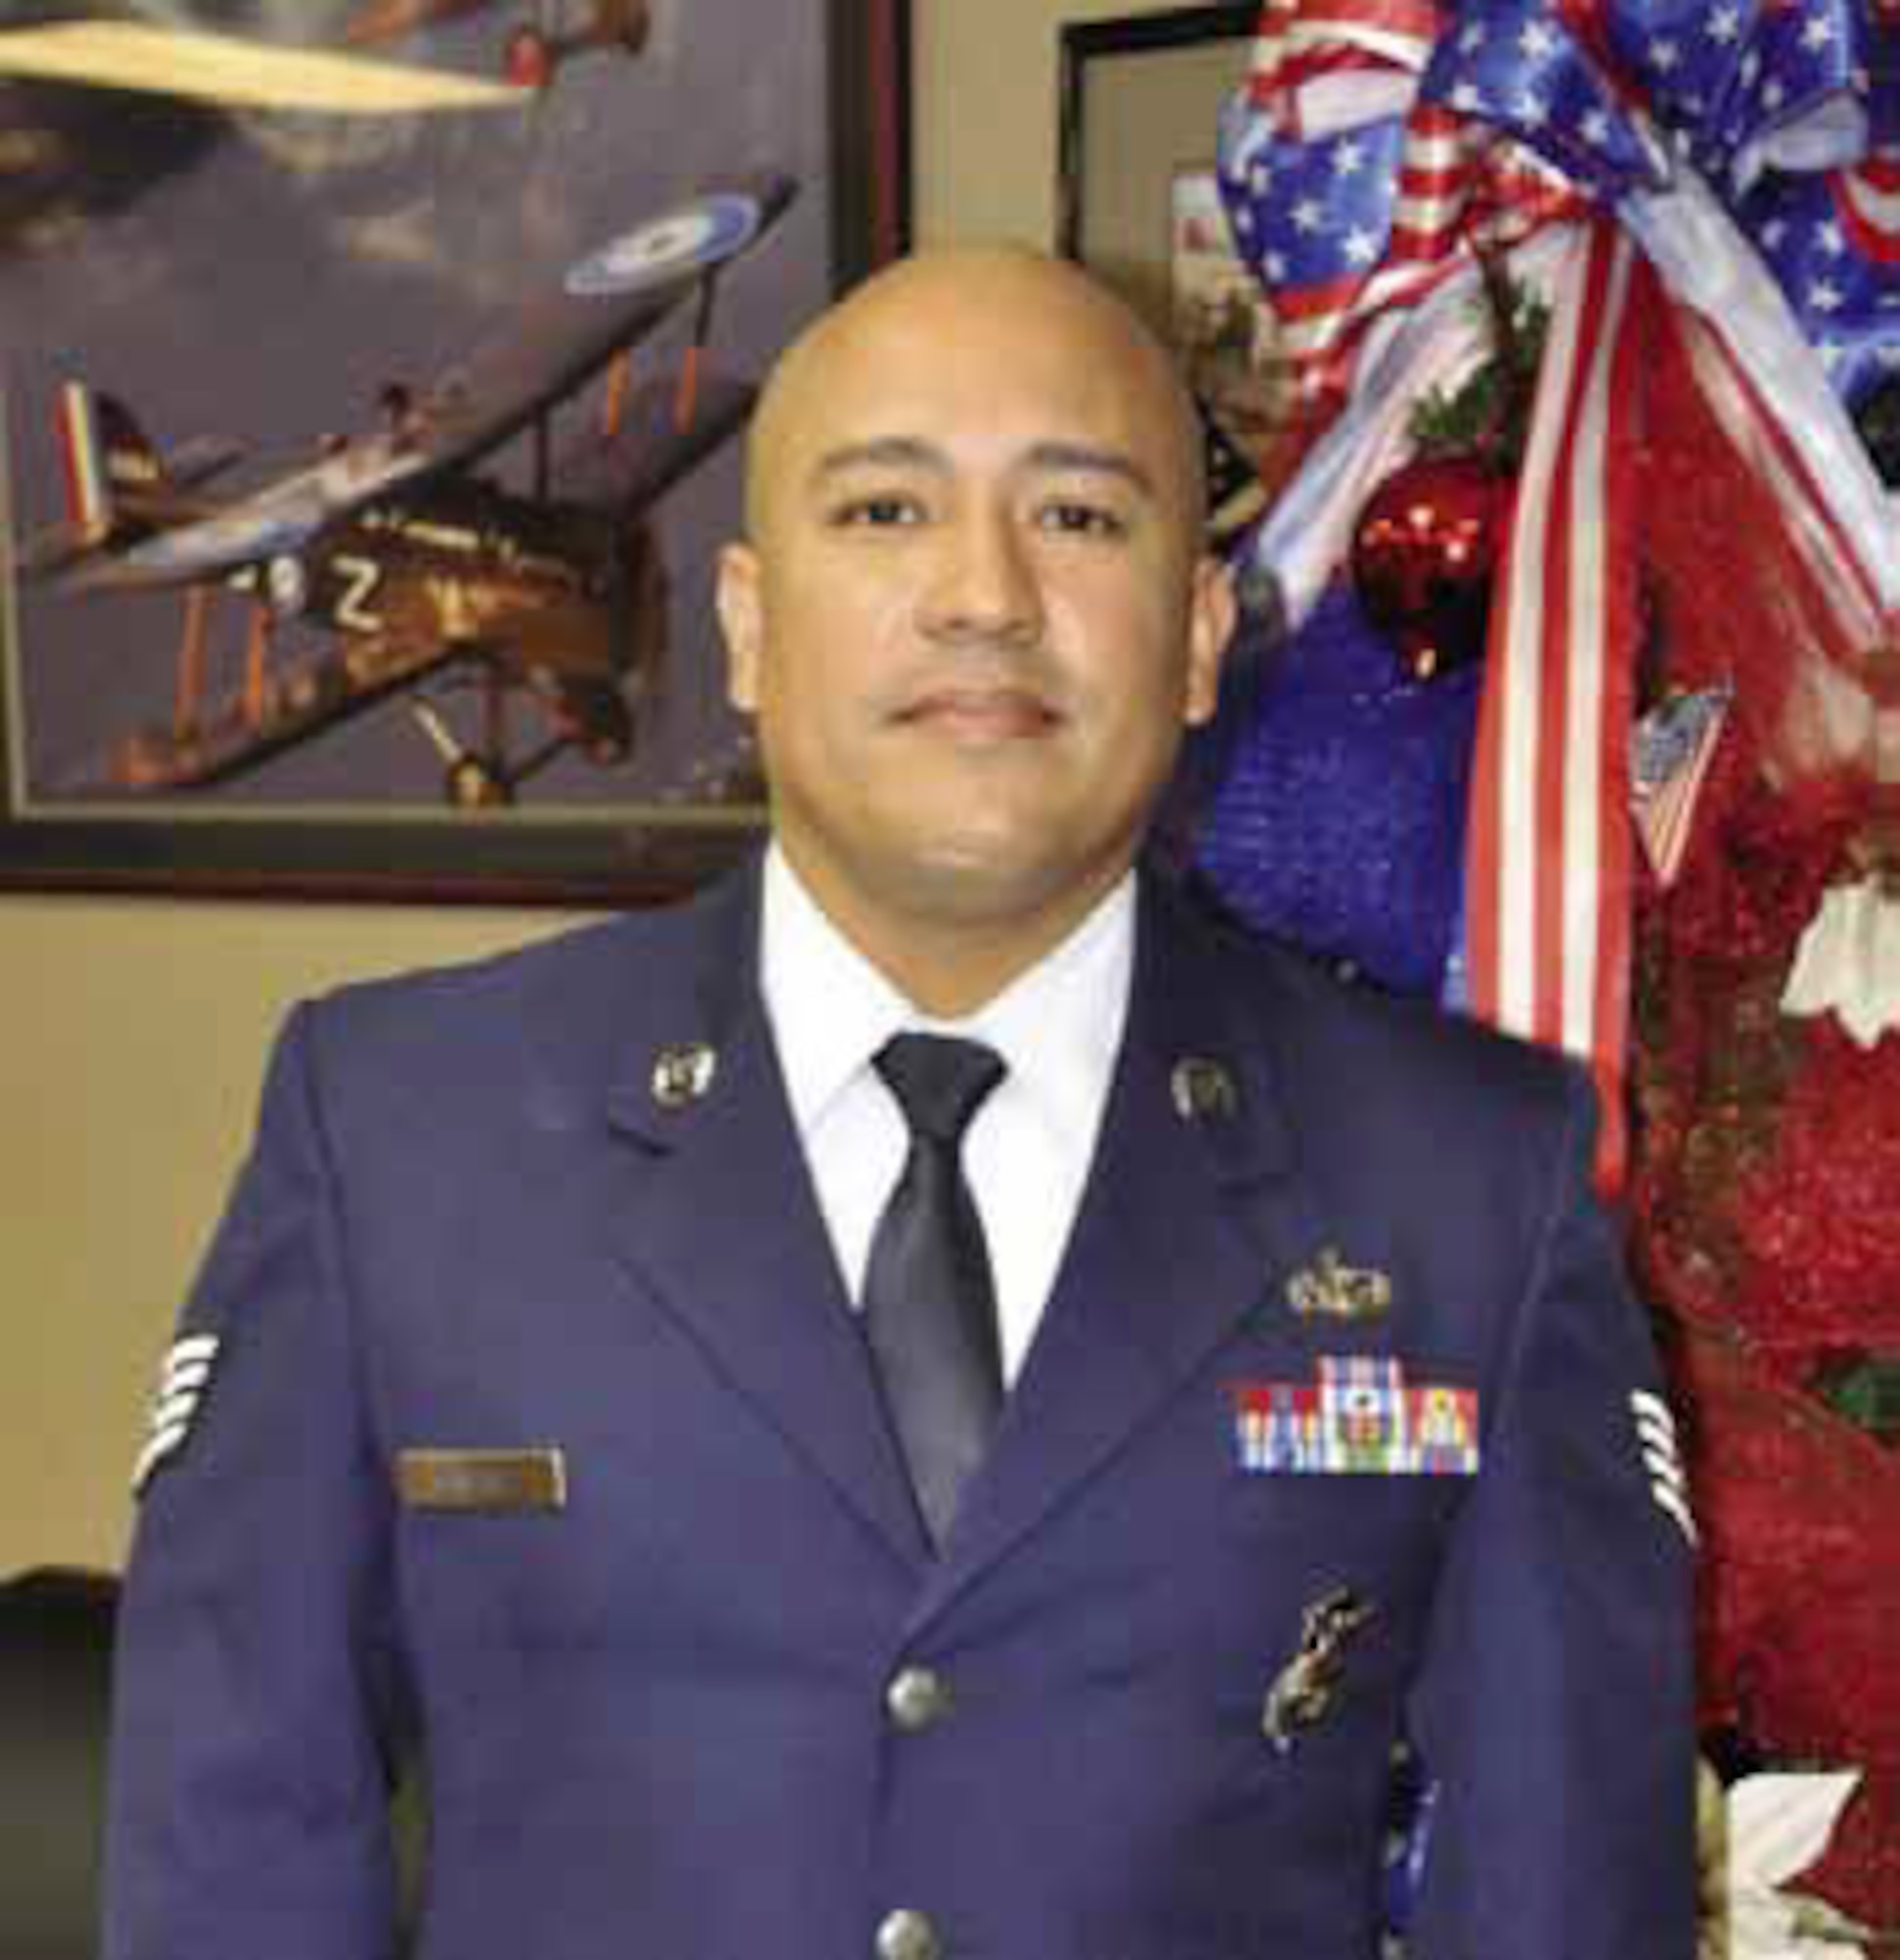 Staff Sgt. Luz A. Gonzalez
452d Security Forces Squadron
NCO of the quarter 
First Quarter FY 2013